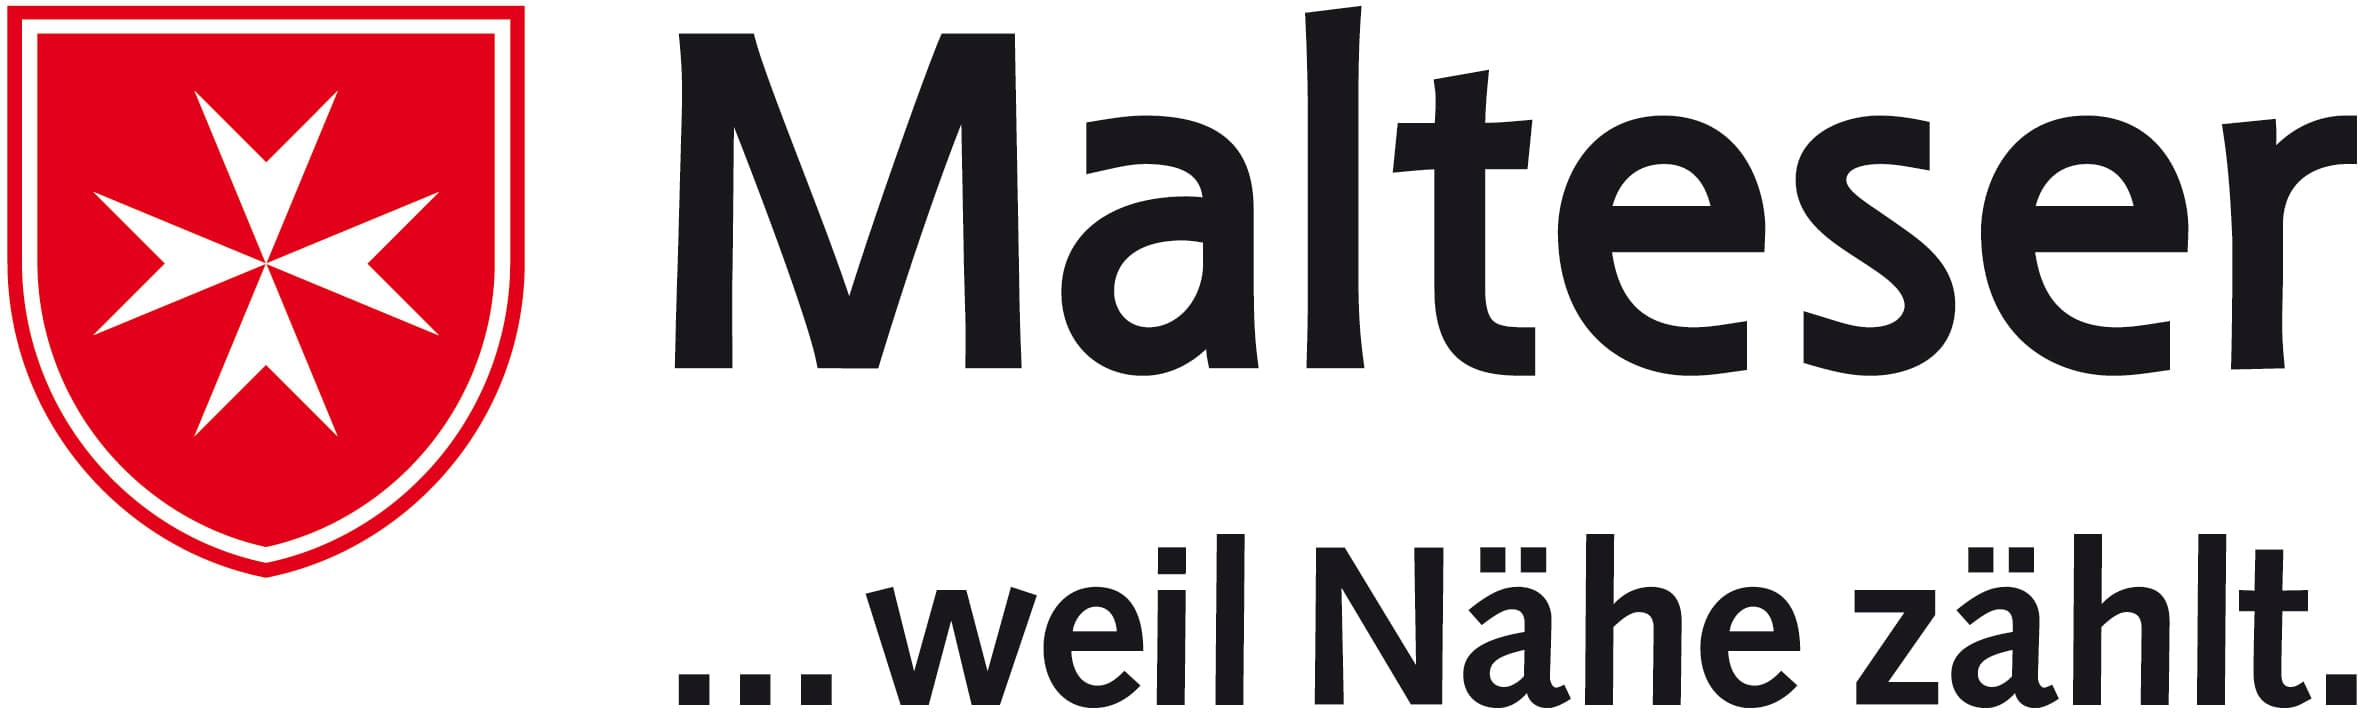 Malteser-Werke-logo